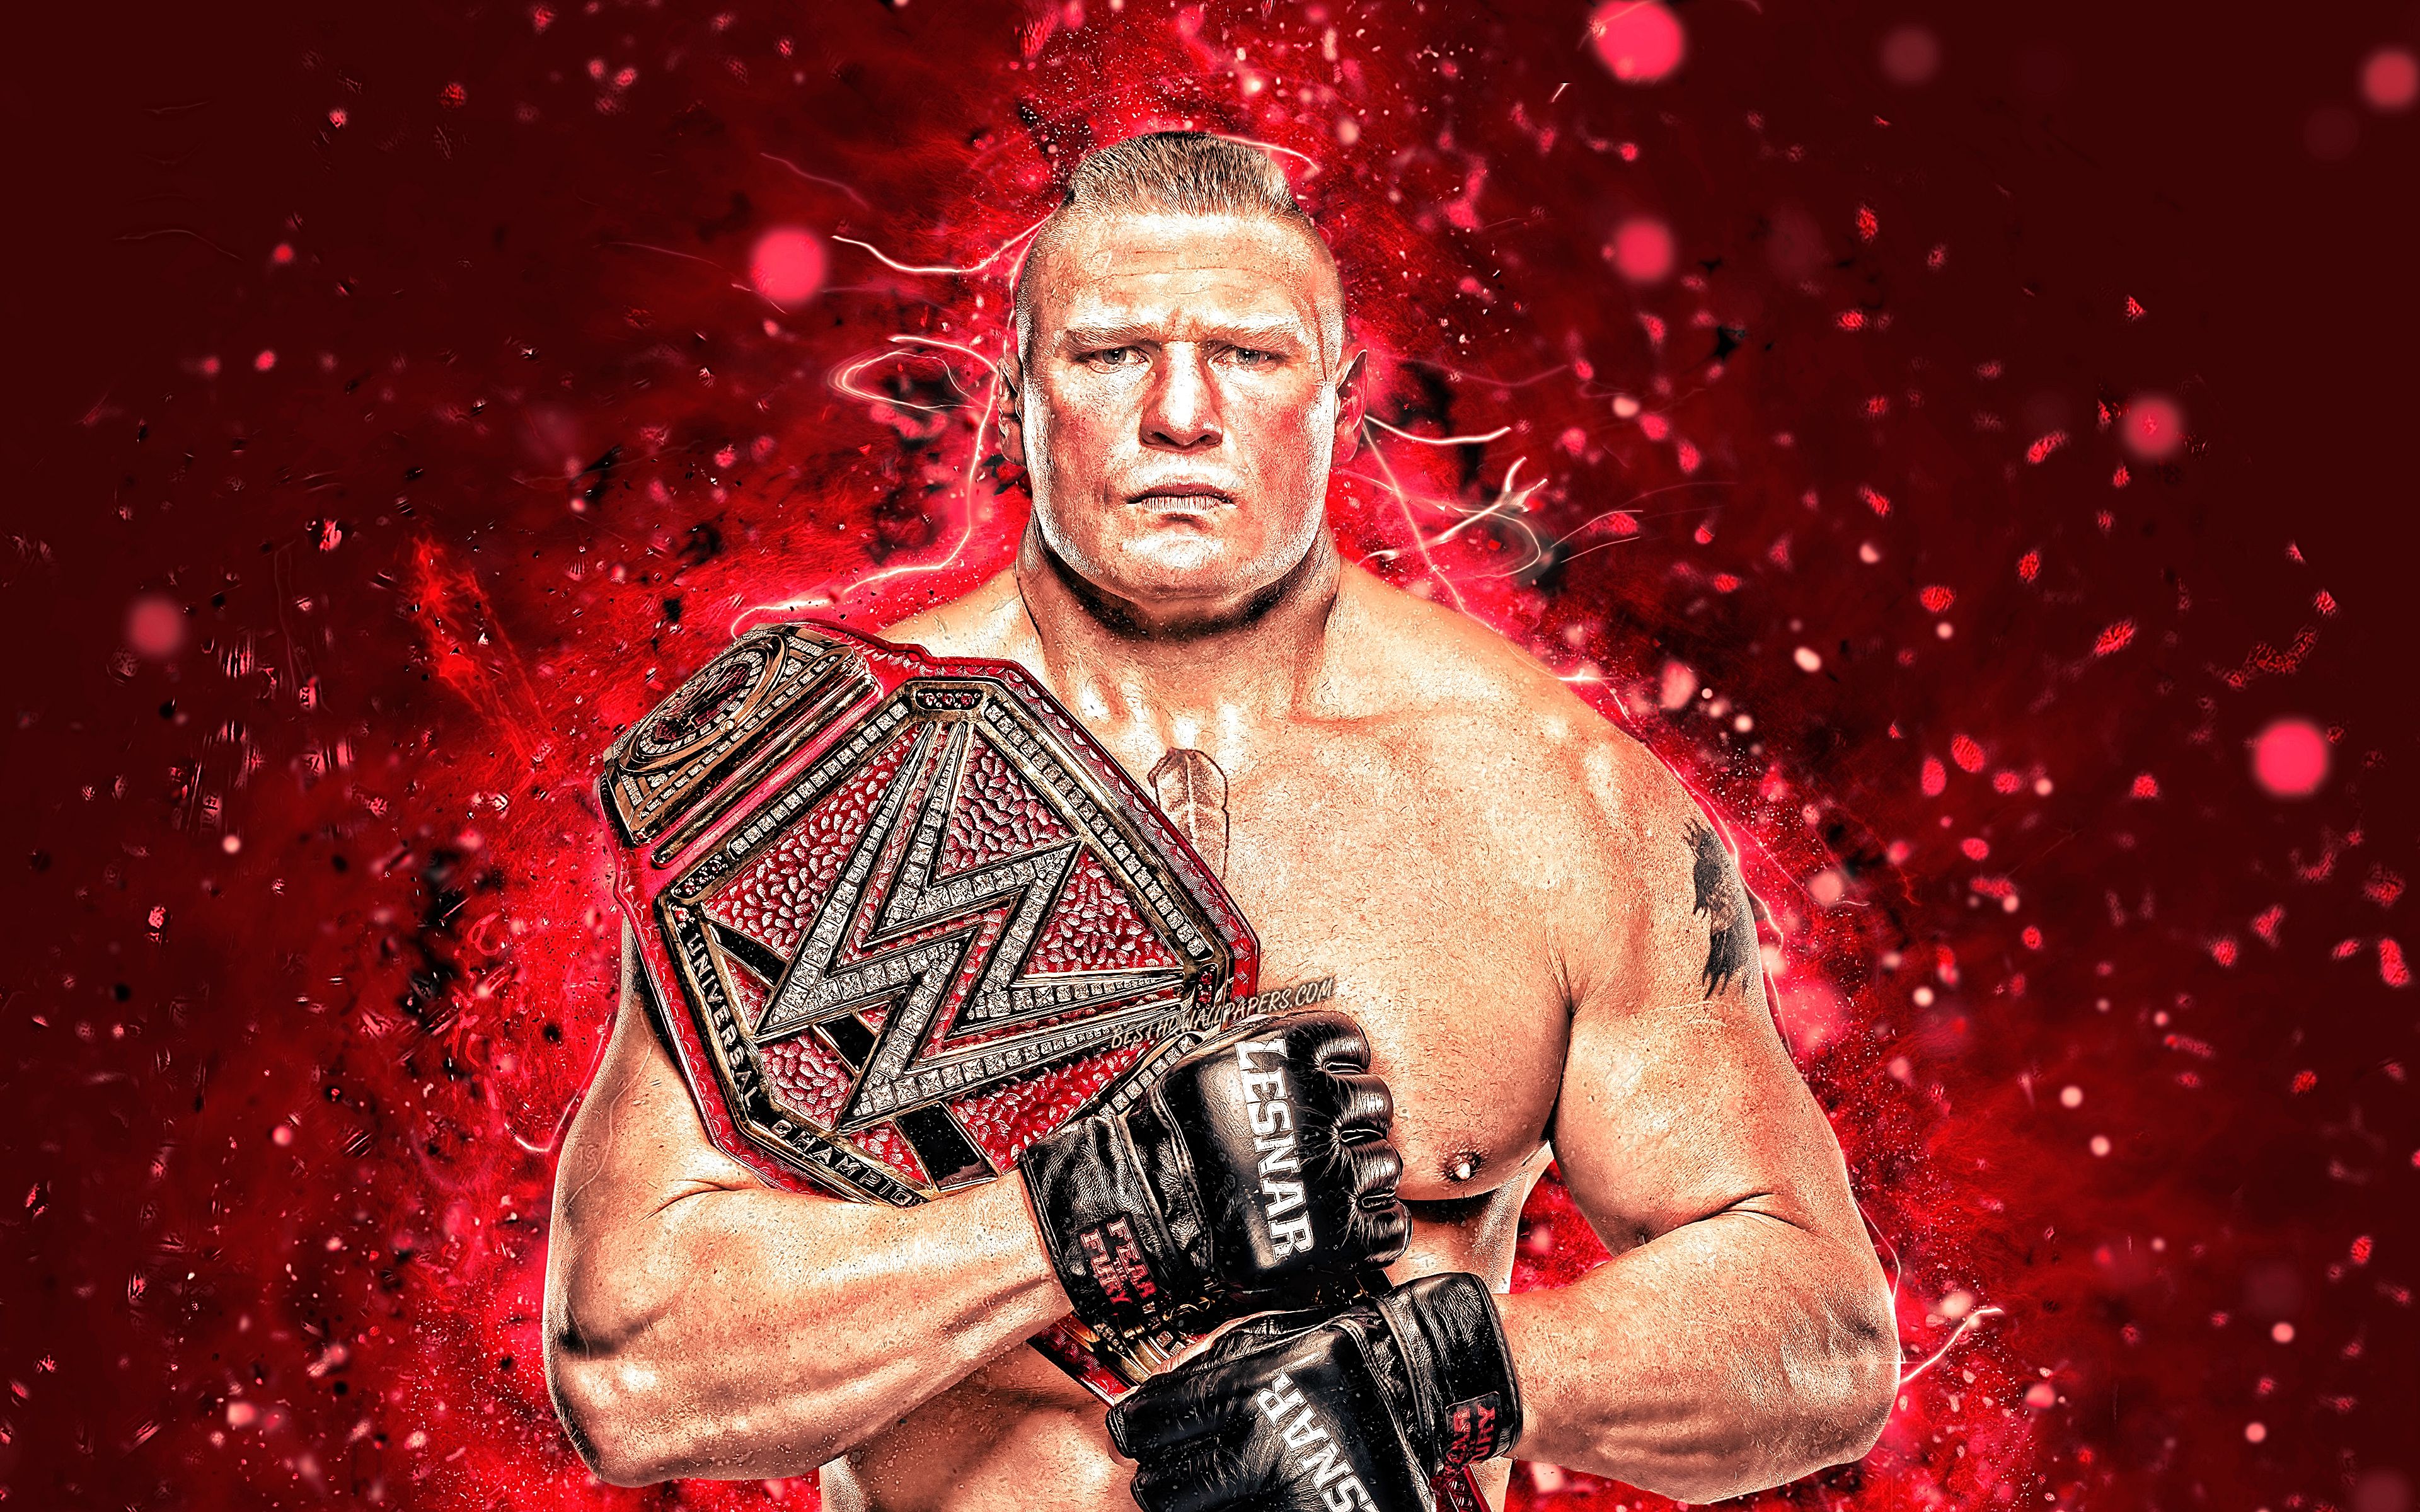 Download wallpaper Brock Lesnar, 4k, american wrestlers, WWE